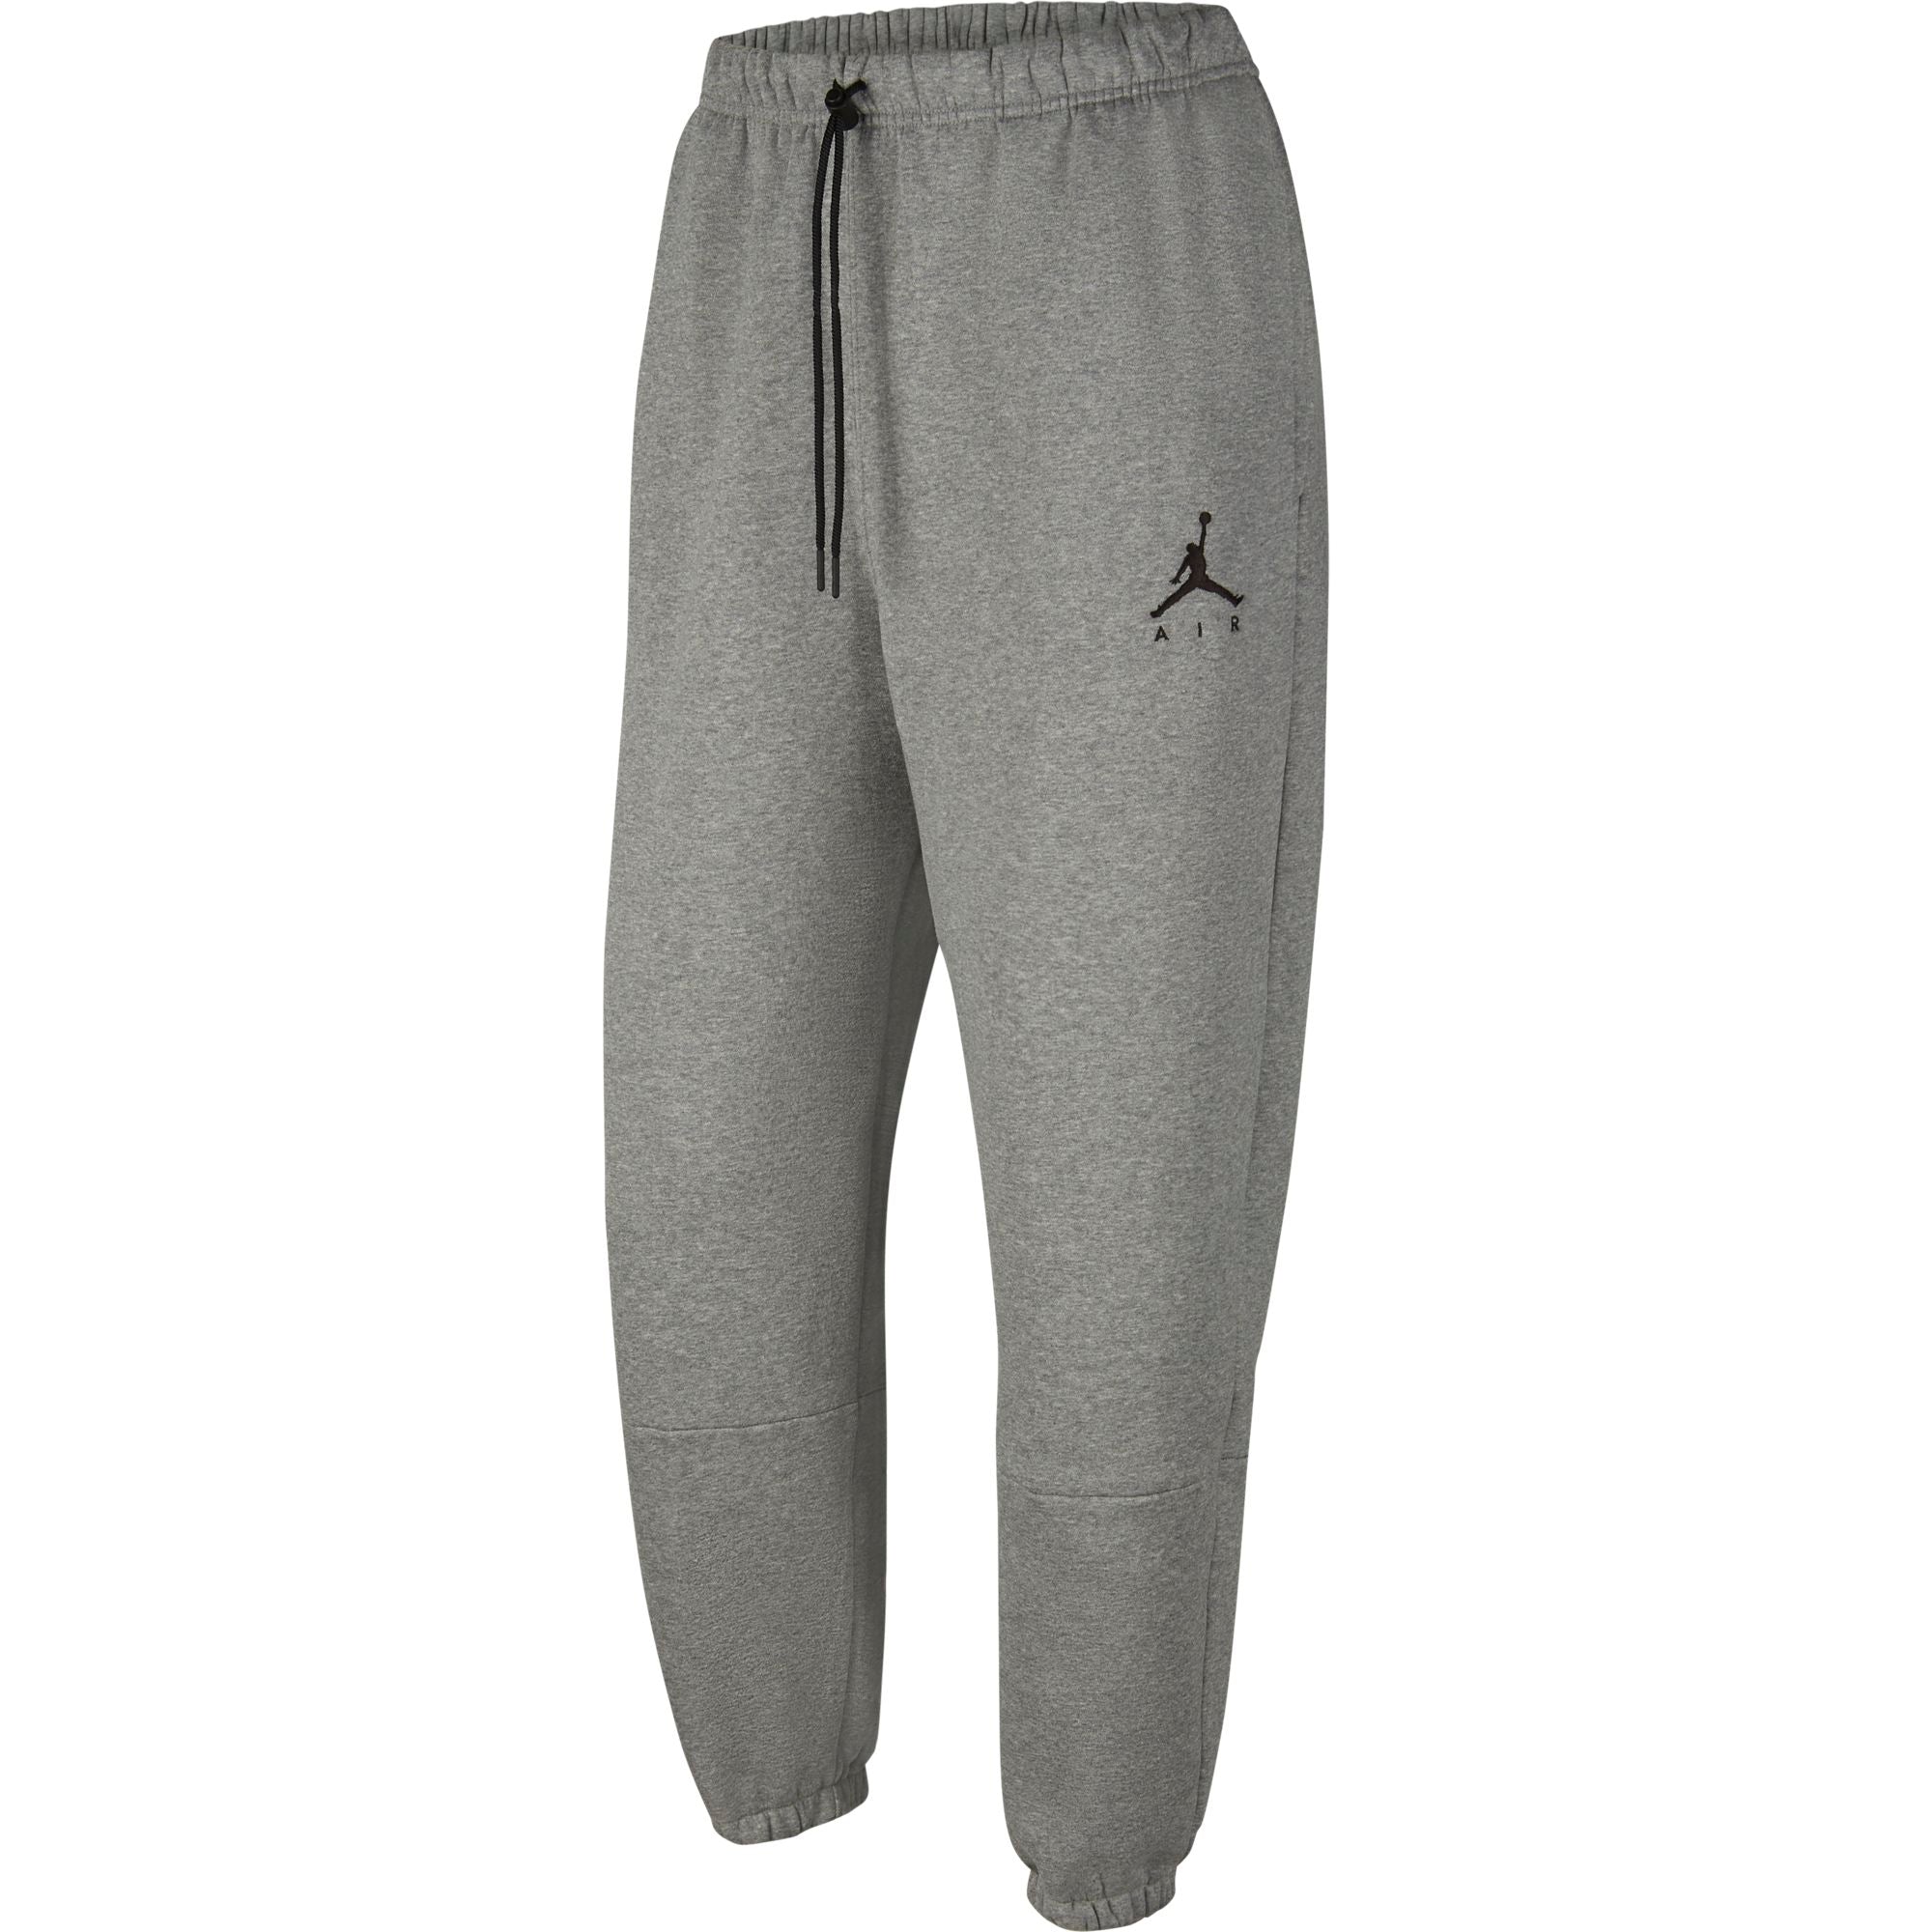 Nike Jordan Jumpman Sweatpants/Joggers (XL)